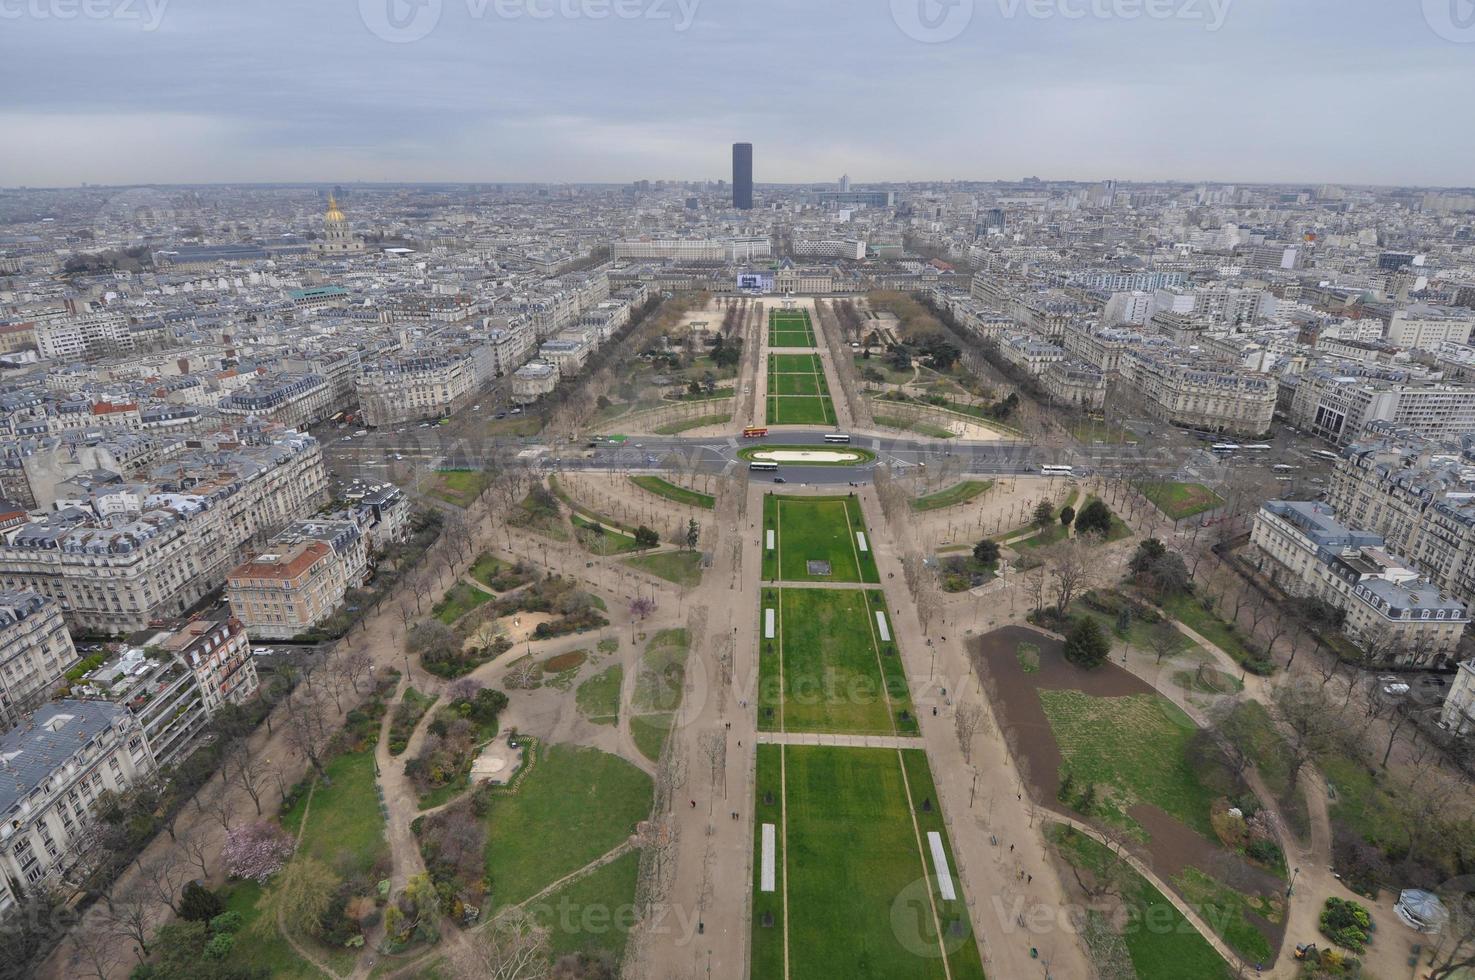 Aerial view of Paris photo